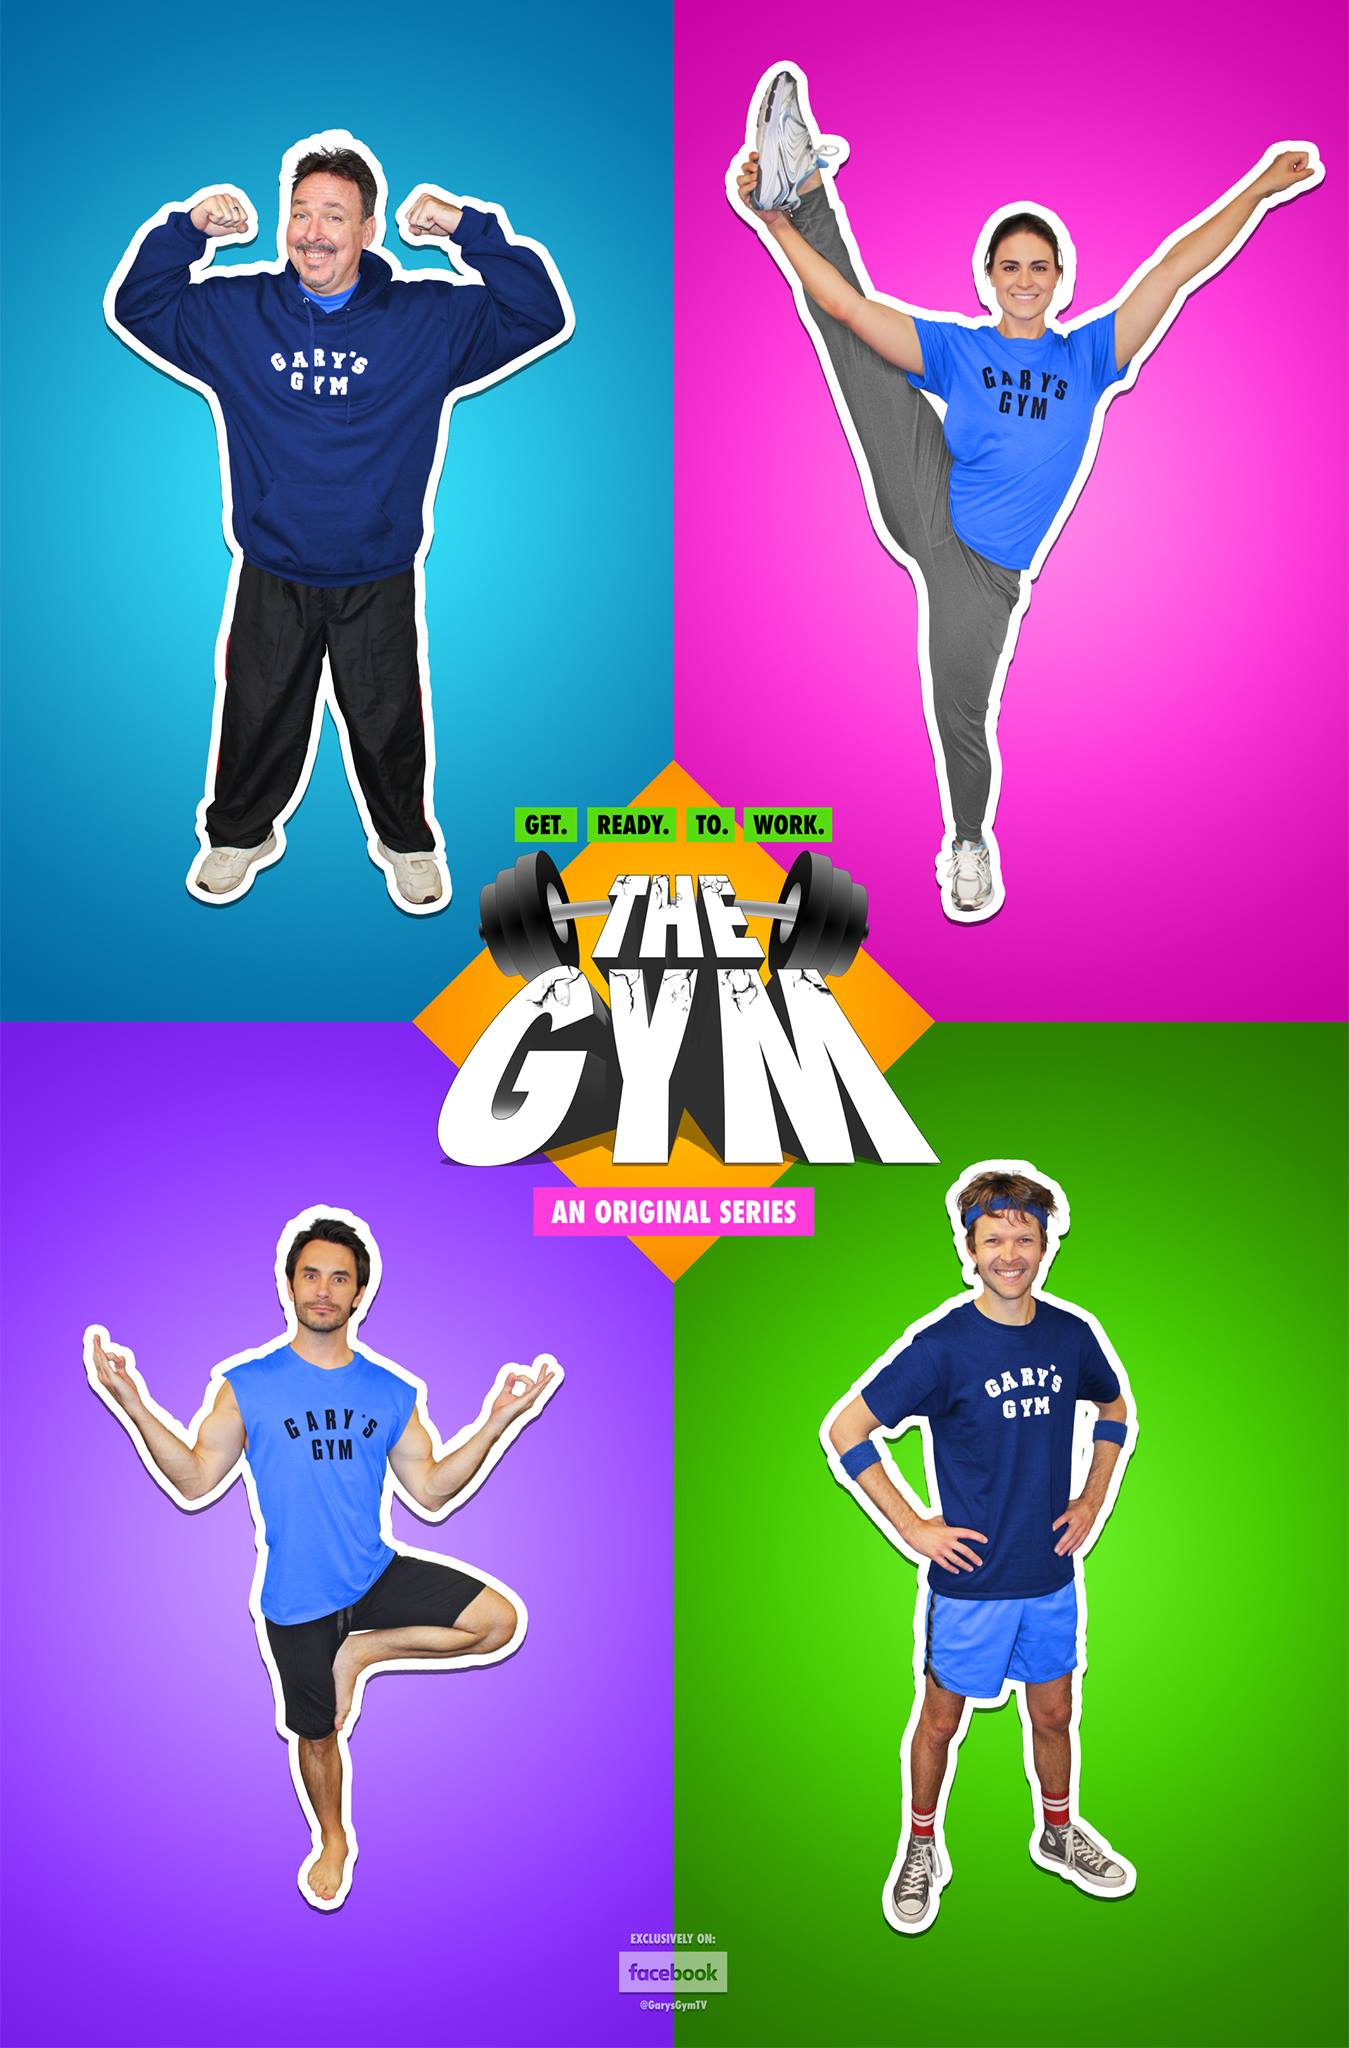 The Gym: An Original Series